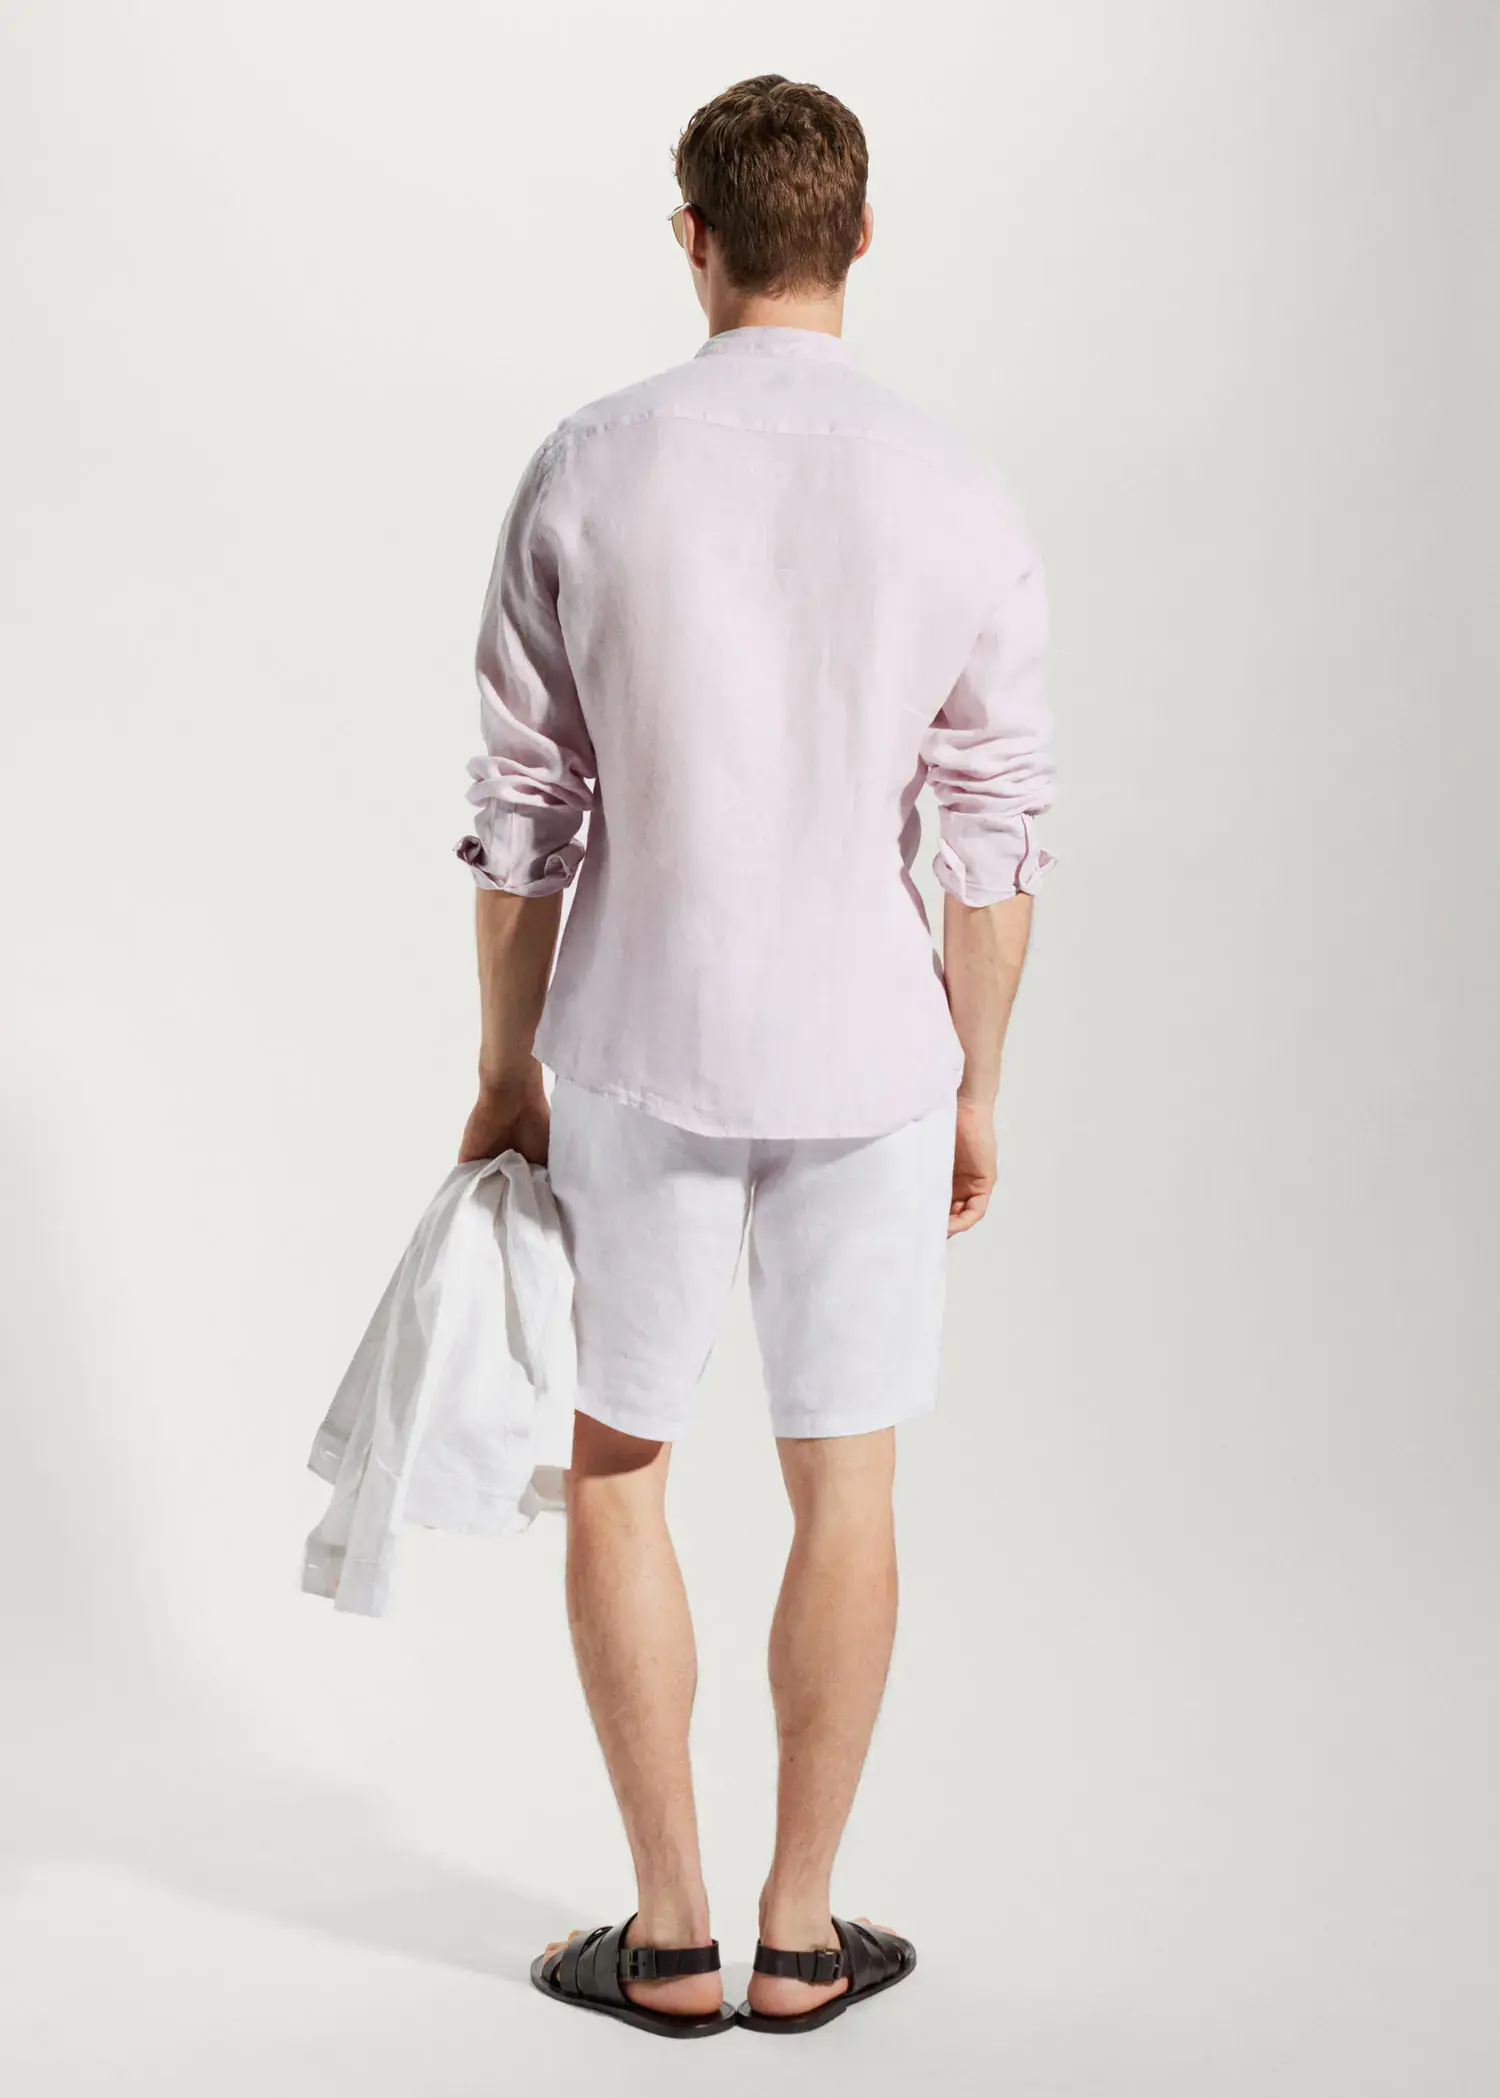 Mango 100% linen Mao collar shirt. a man in white shorts and a light pink shirt. 